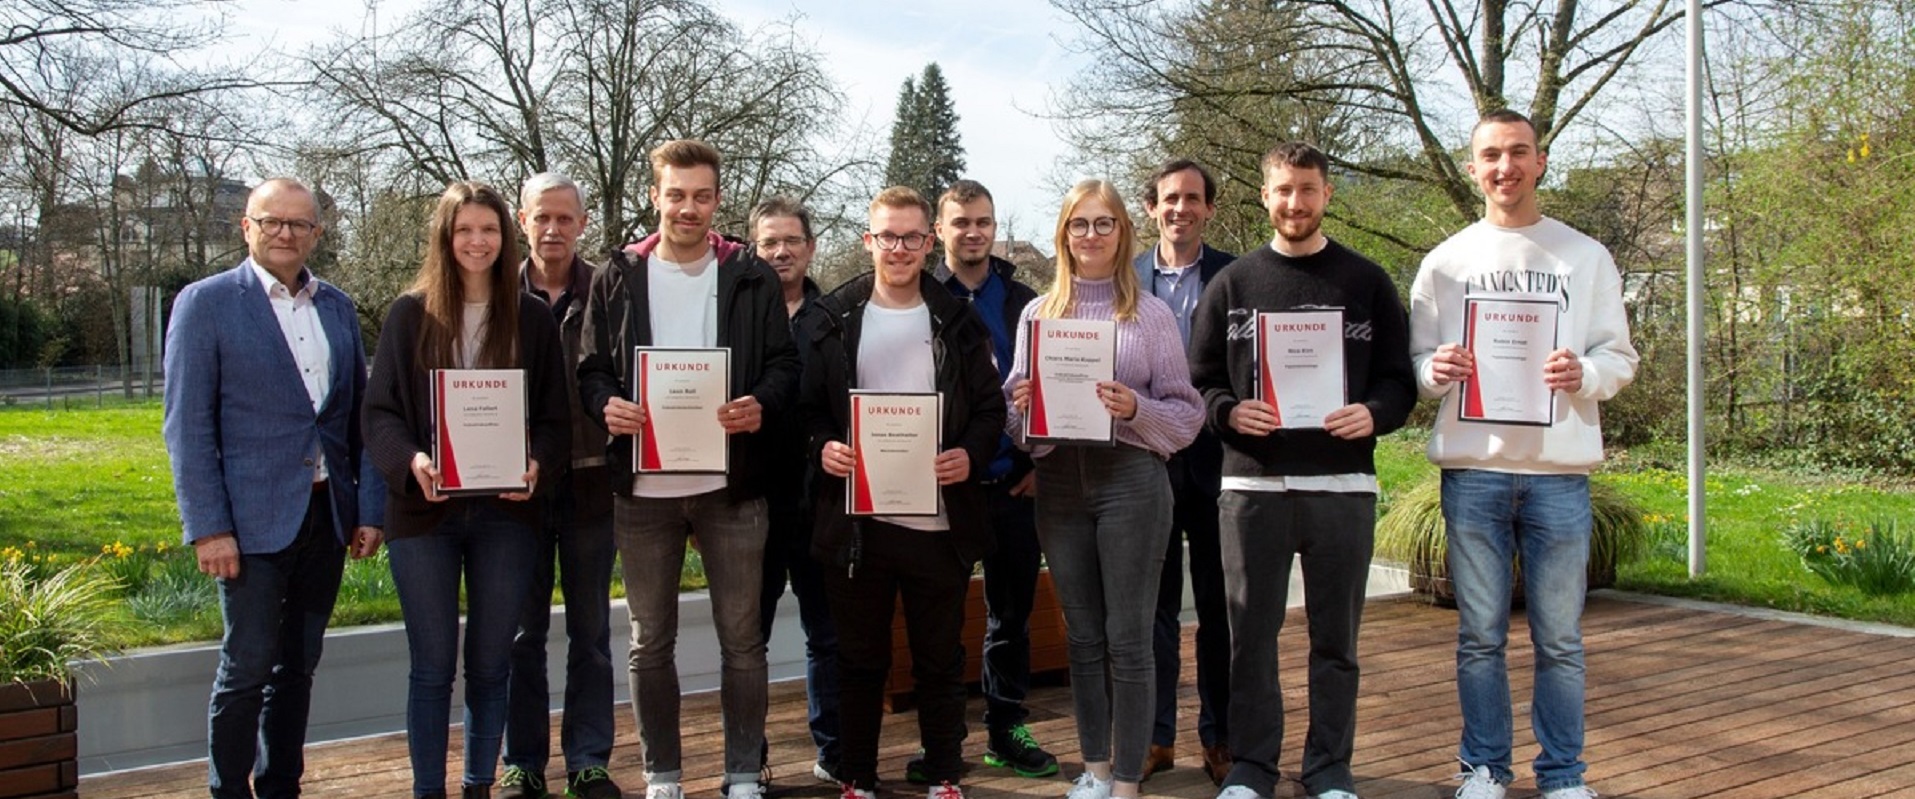 Die Prüfungsabsolventen am Standort Oberkirch erhalten ihre Urkunden zur erfolgreichen Ausbildung.